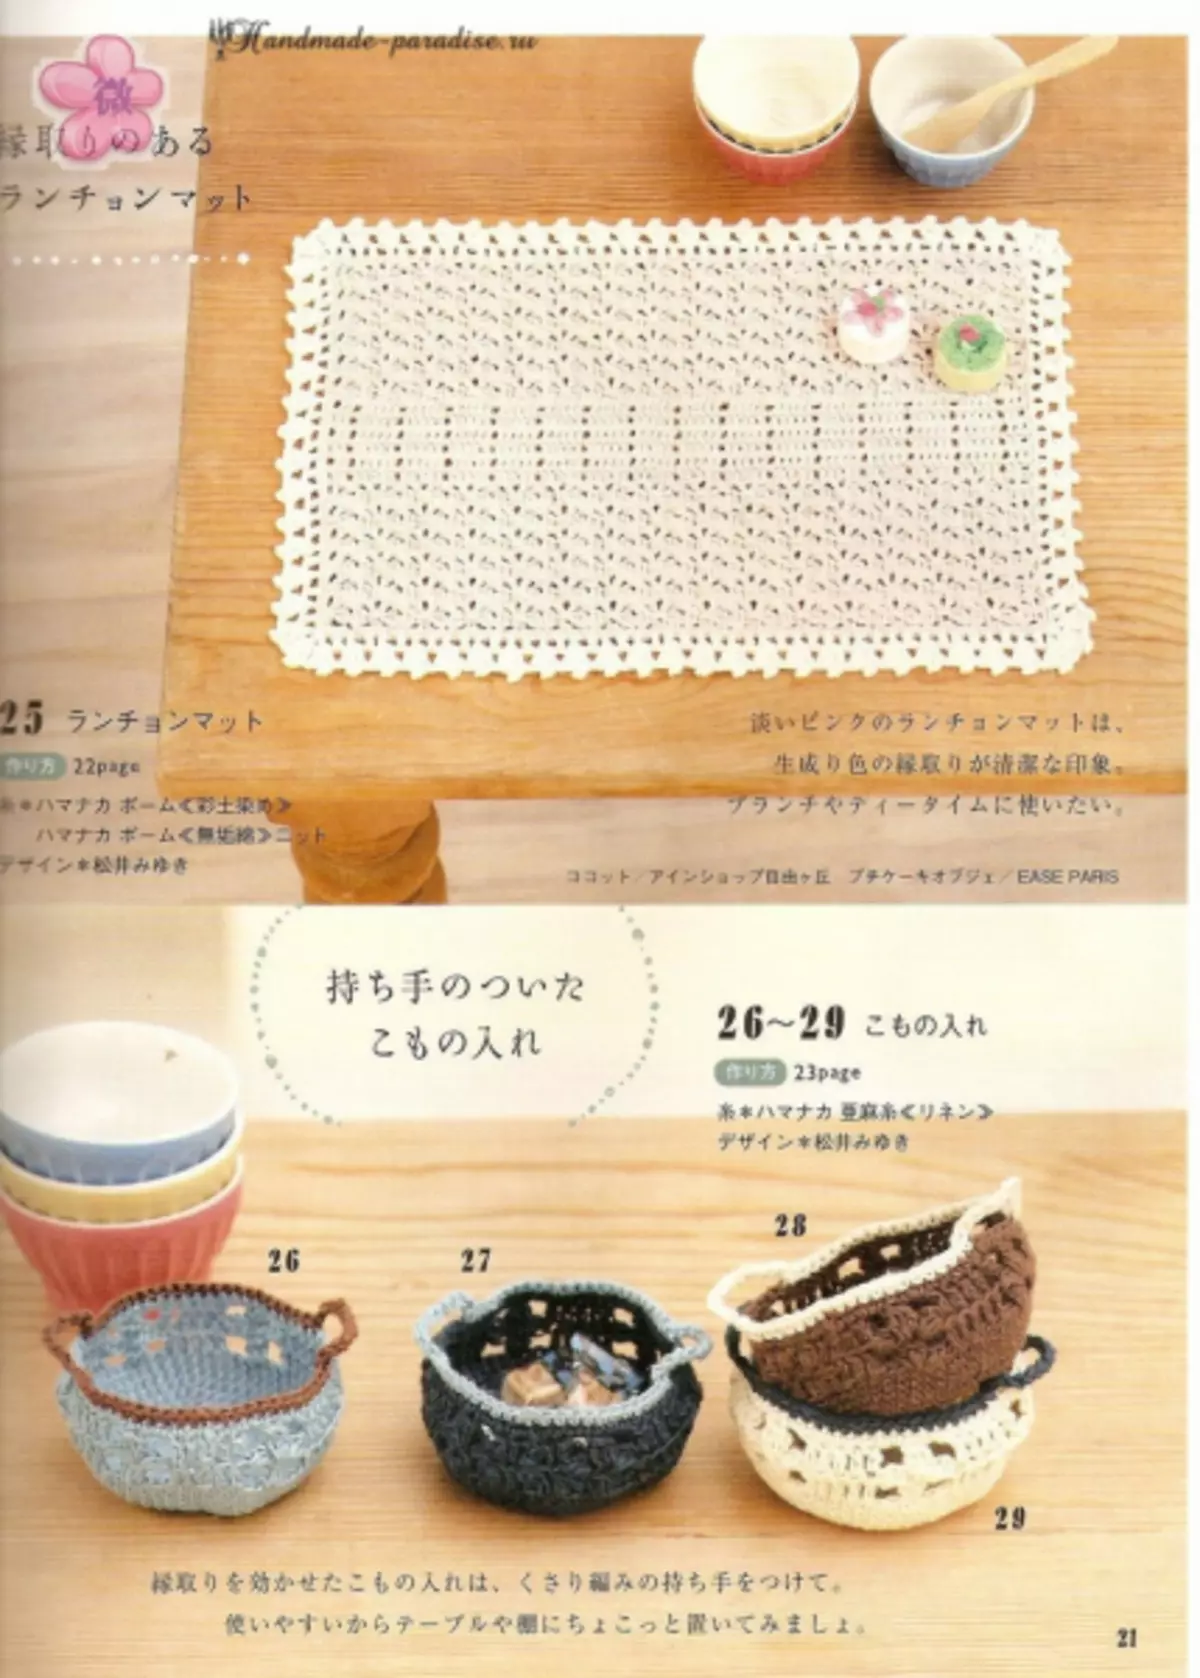 Crochet-someraj akcesoraĵoj. Japana Revuo kun Skemoj